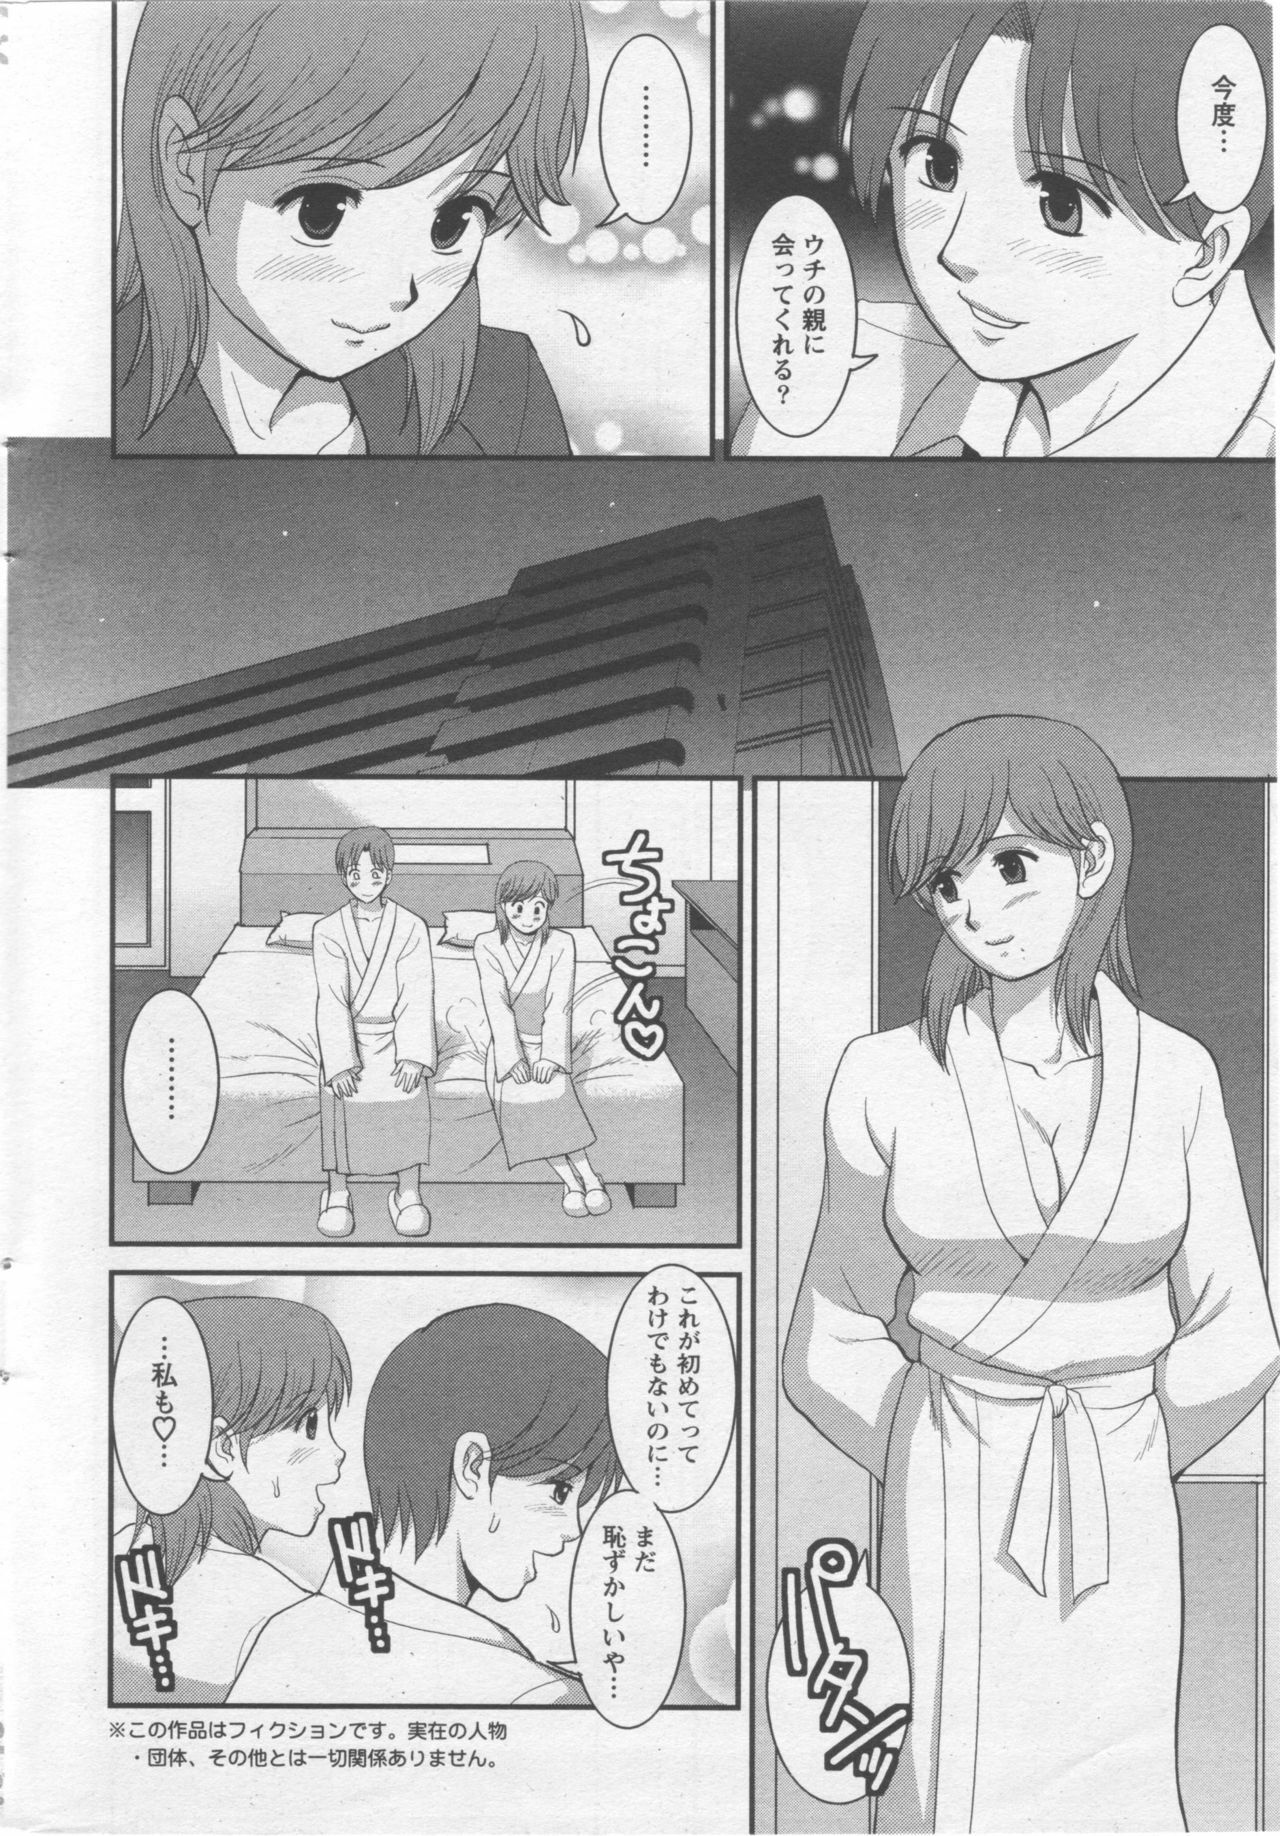 Haken no Muuko-san 10 [Saigado] page 11 full